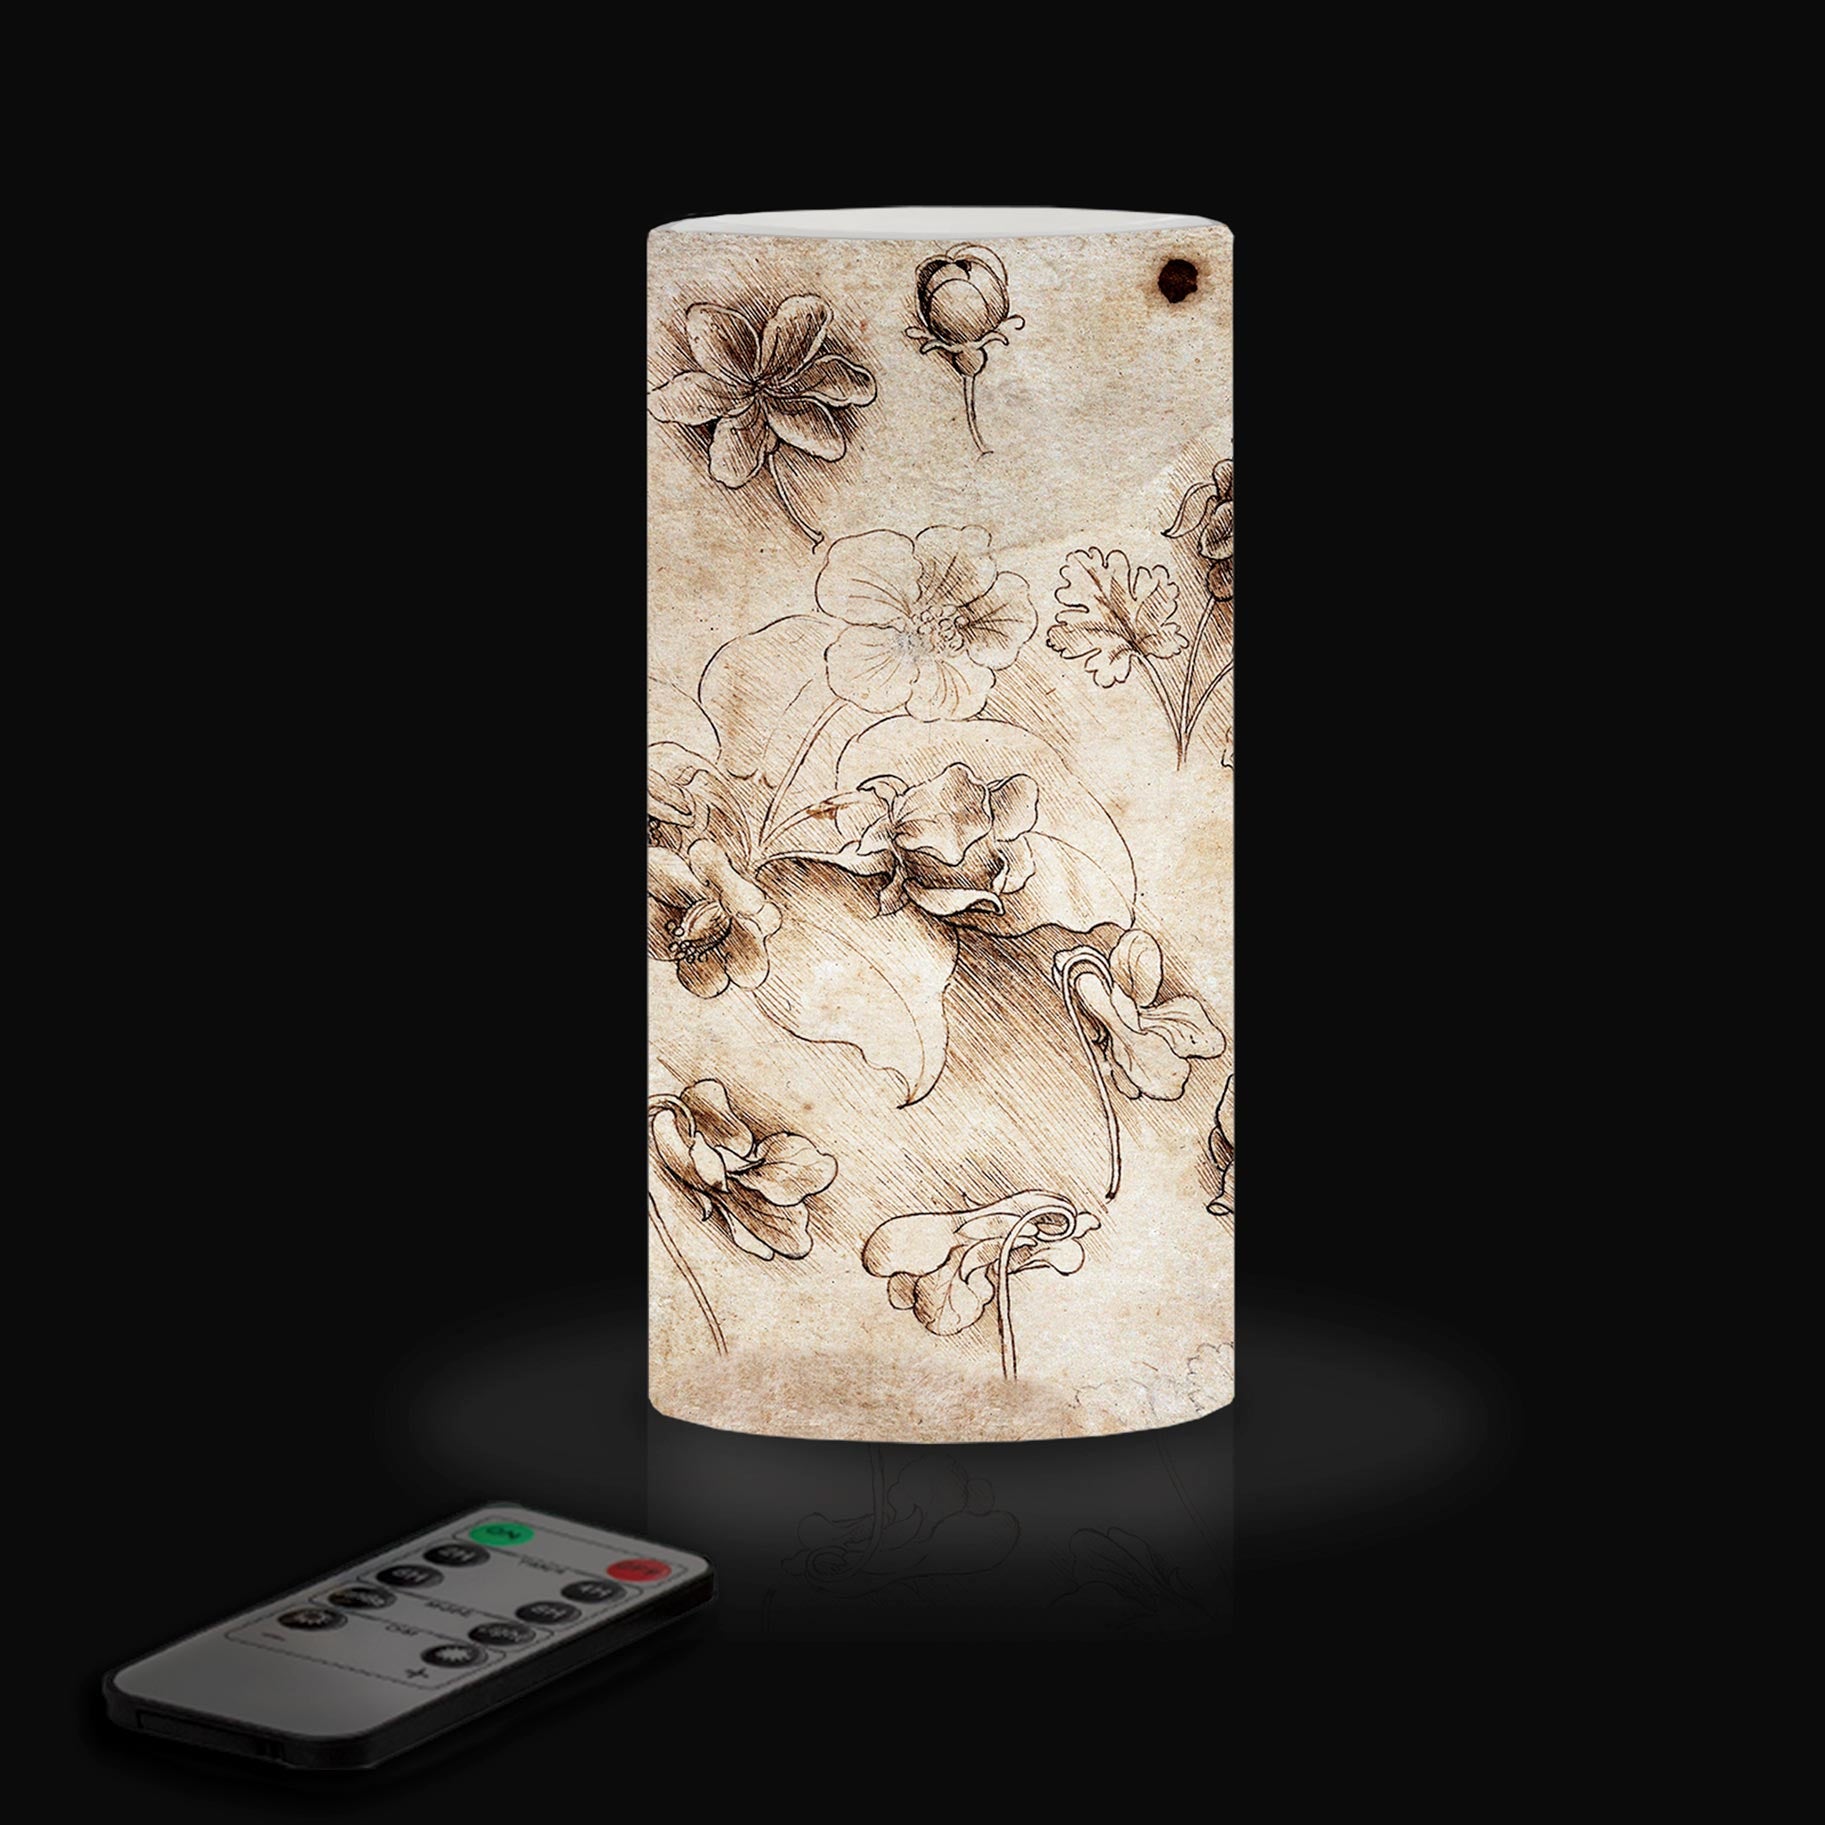 Flameless LED Flickering 6" Pillar Wax Candle Light - Artist da Vinci - Flower Study